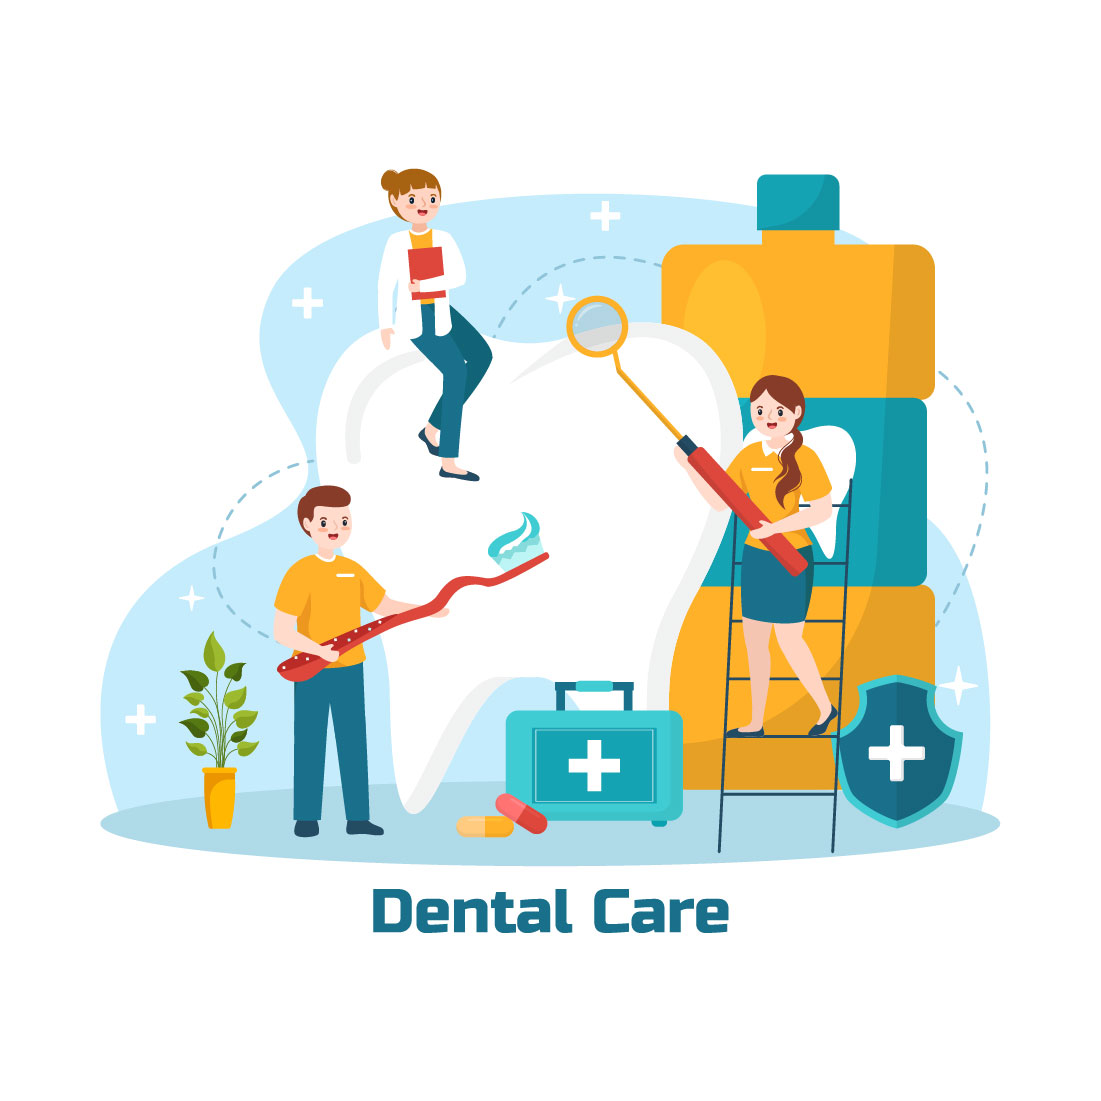 12 Dental Care Illustration preview image.